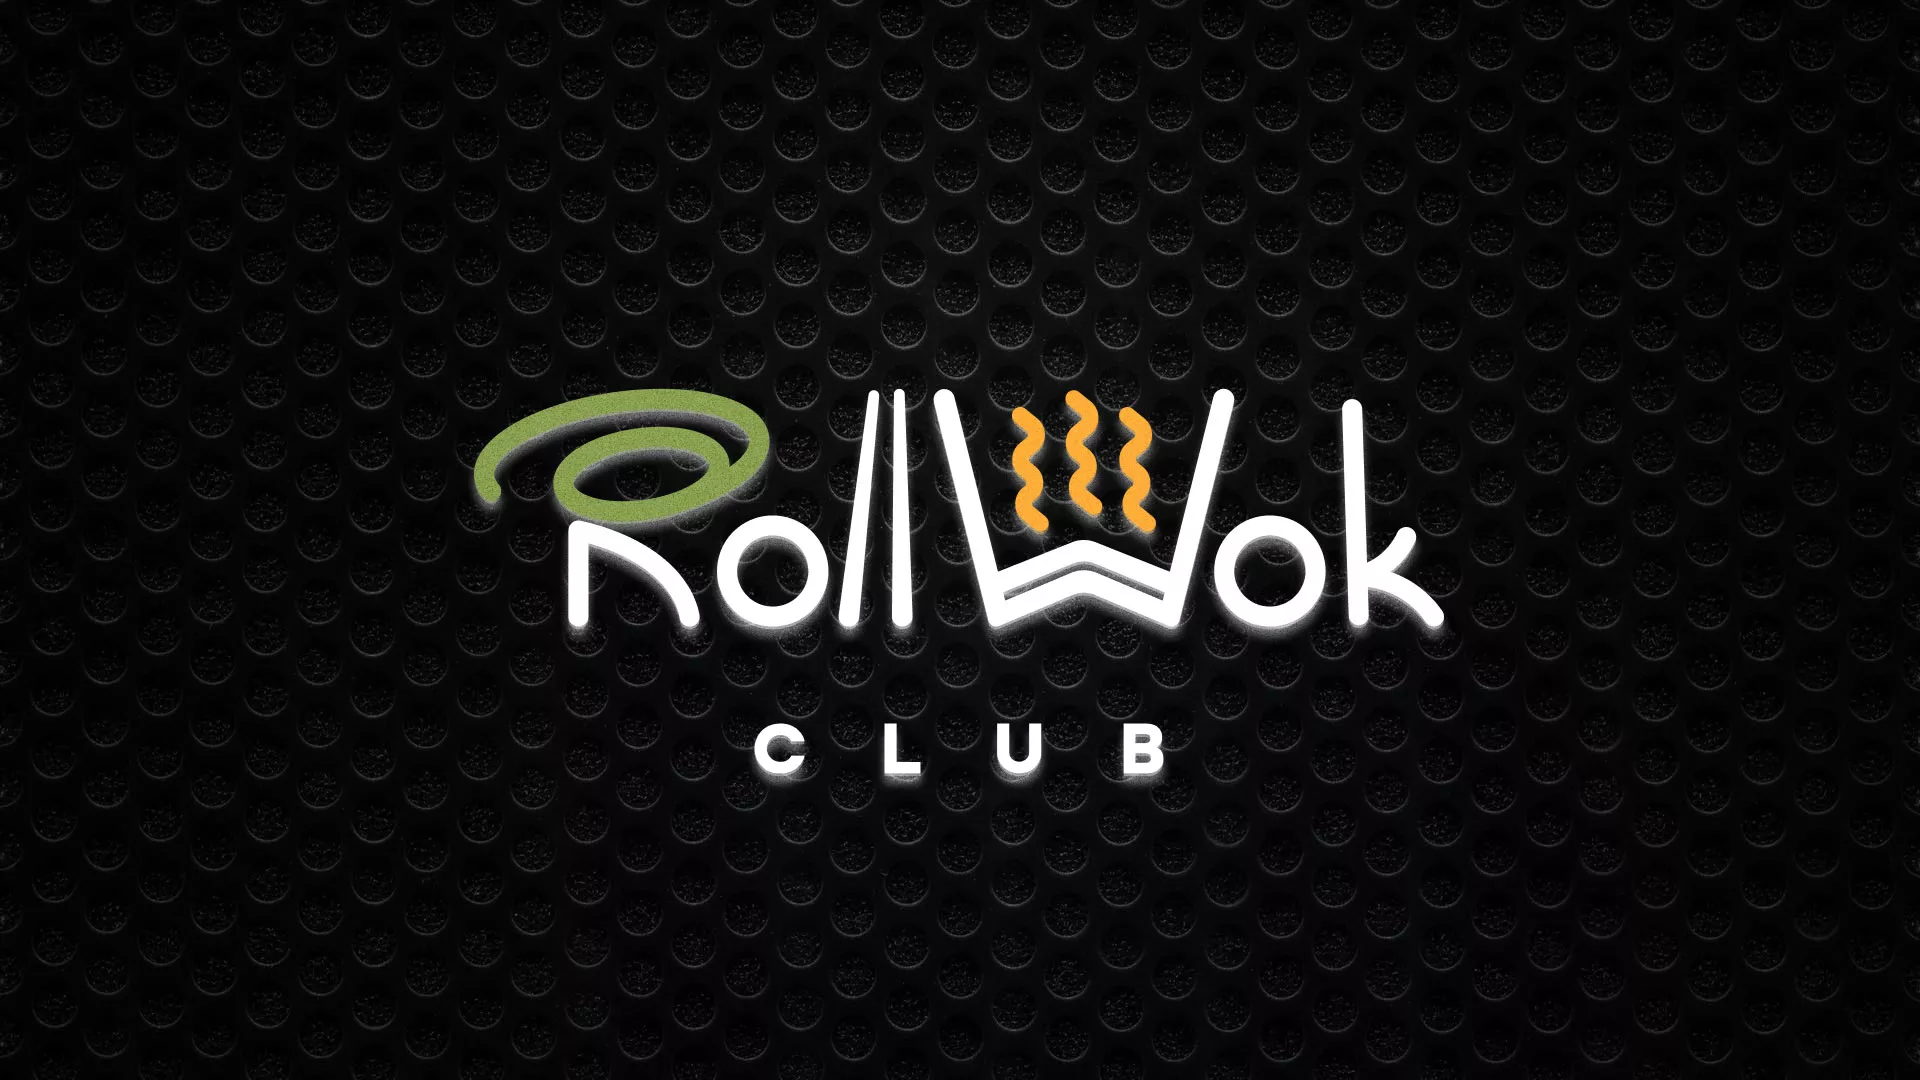 Брендирование торговых точек суши-бара «Roll Wok Club» в Вихоревке